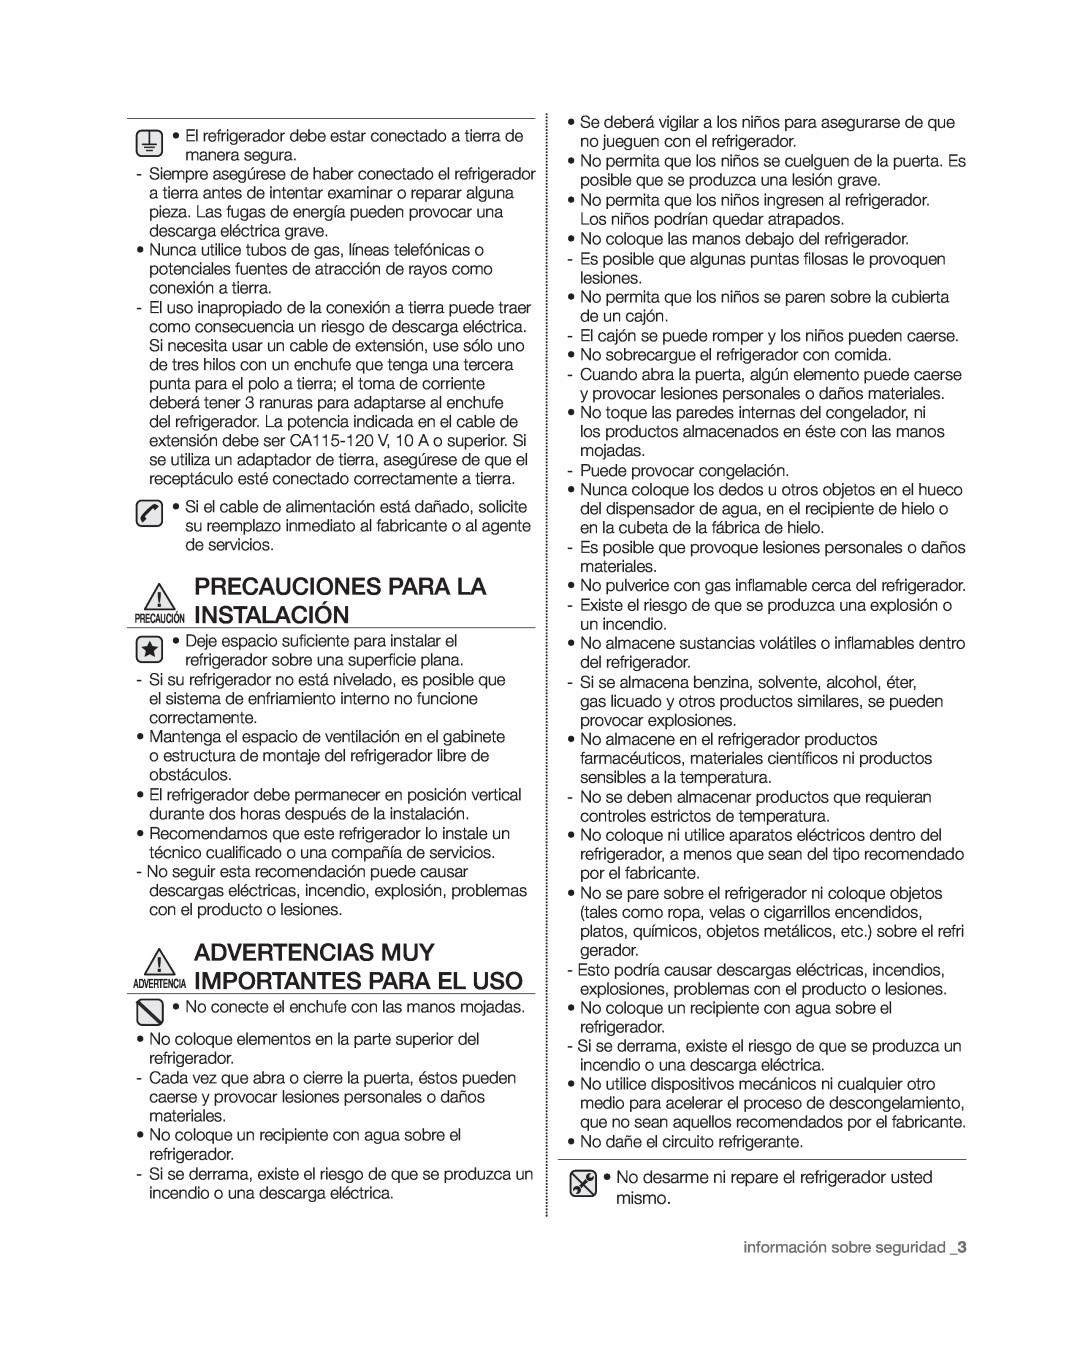 Samsung RF4267HA user manual Advertencias Muy, Advertencia Importantes Para El Uso 